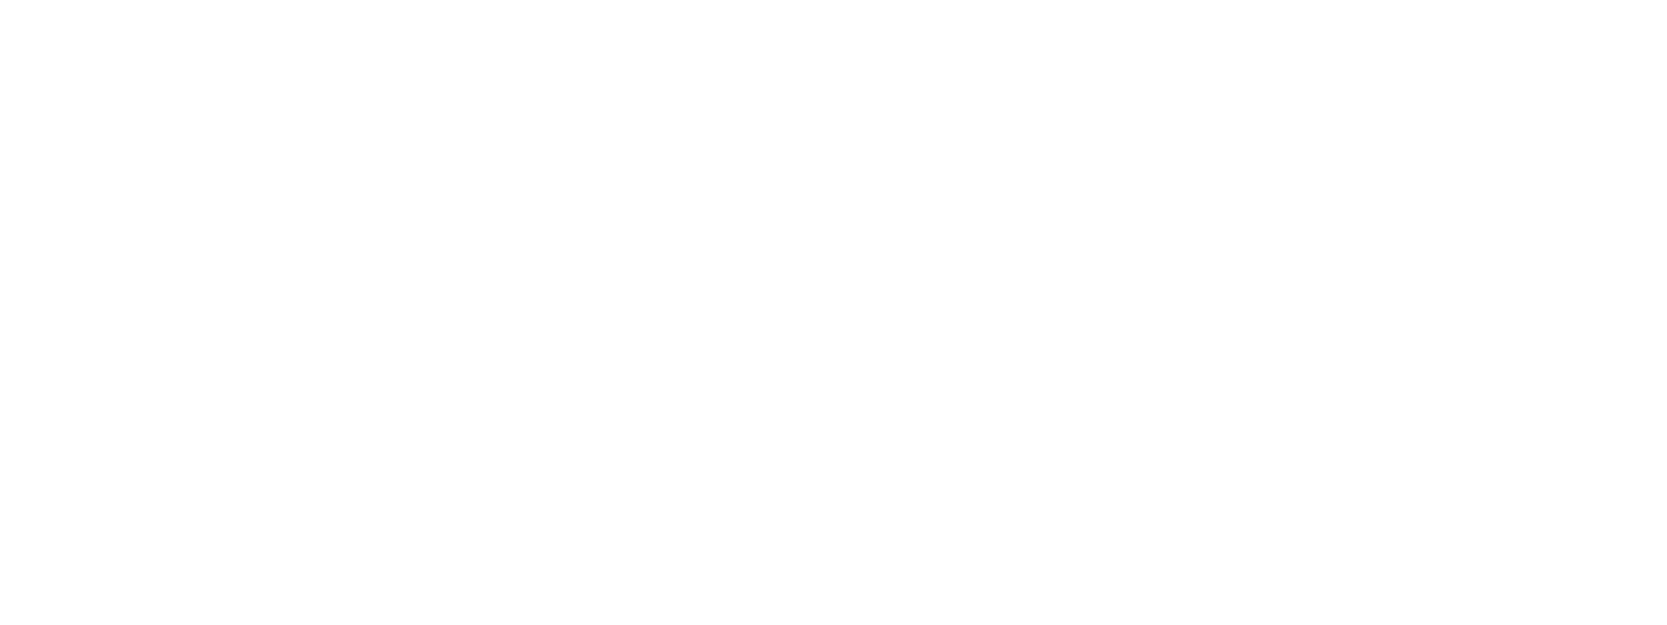 國際數位資產協會IDAA